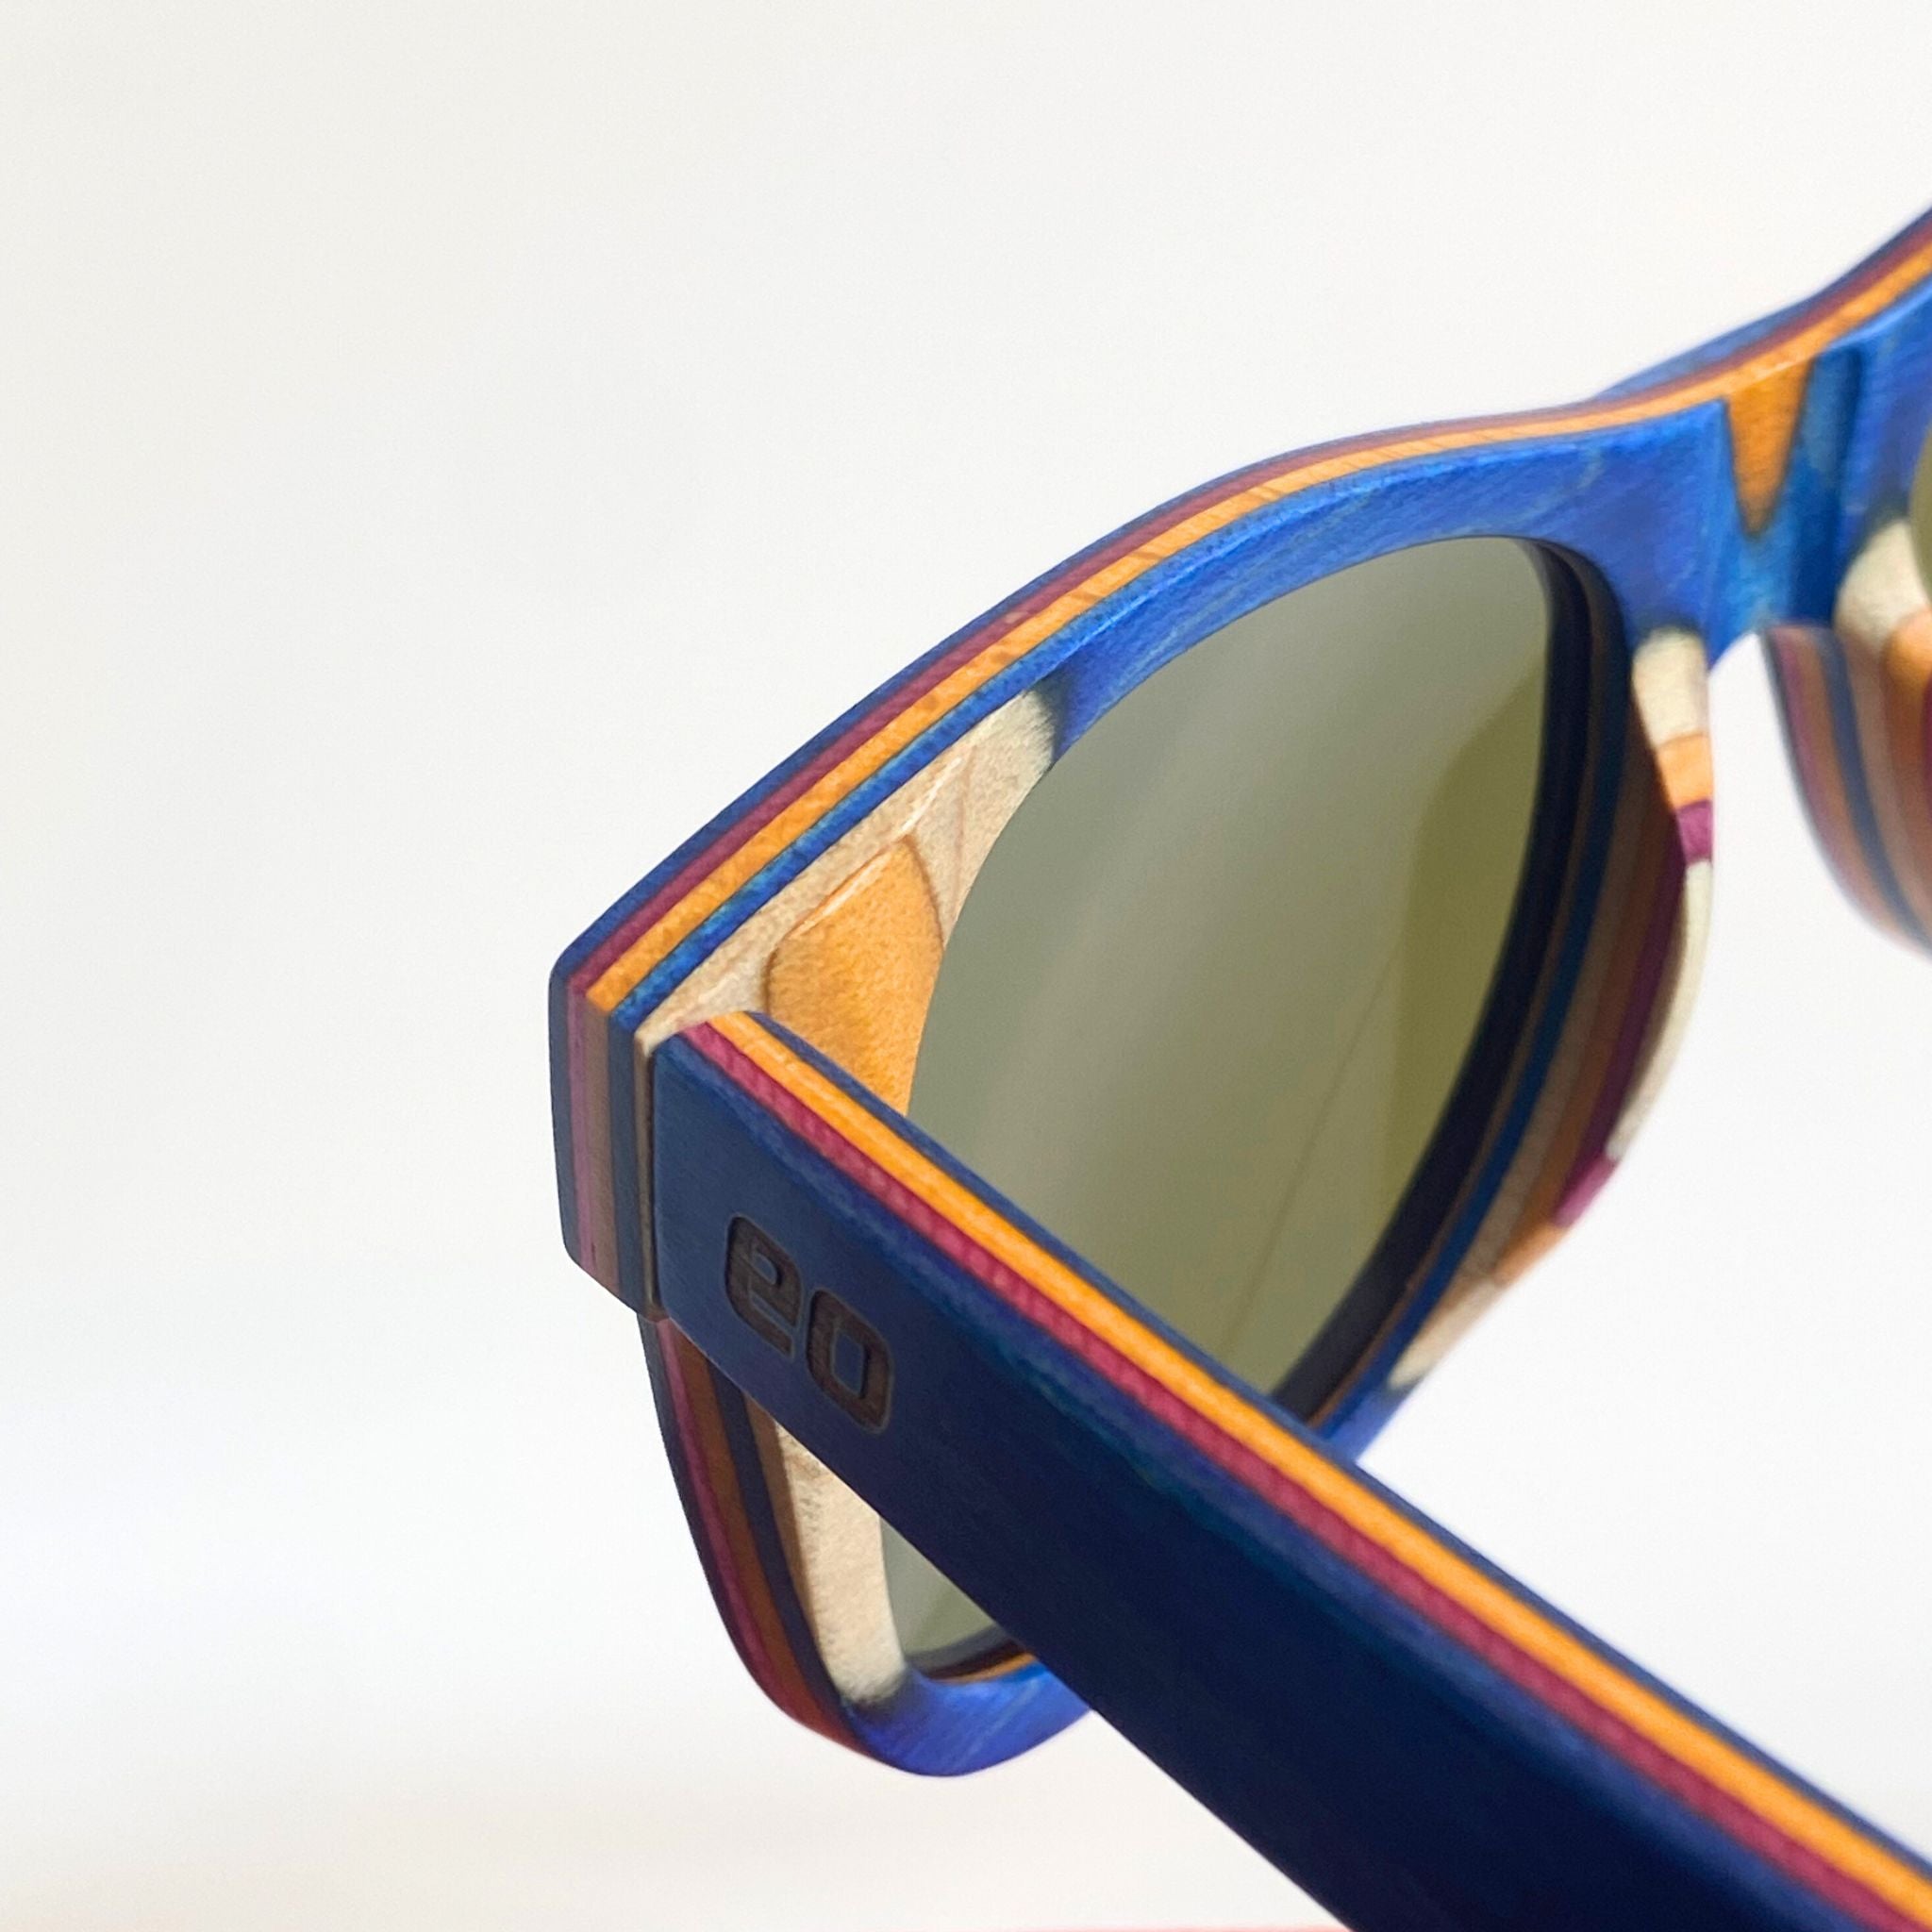 The Zermatt Layered Wood Sunglasses